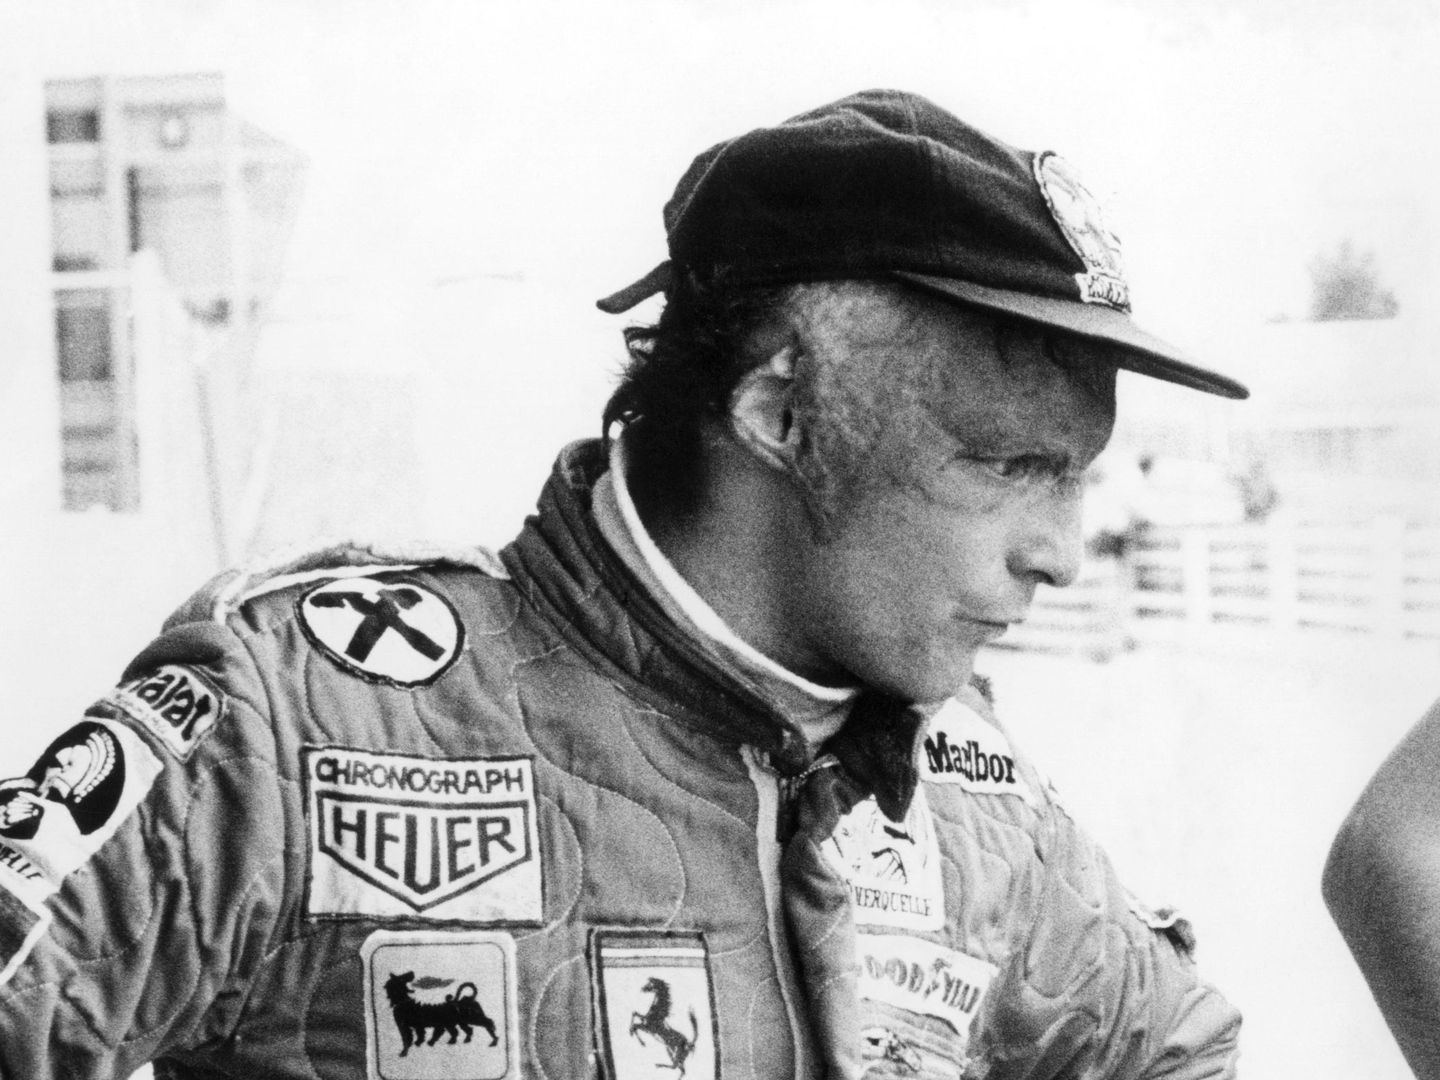 Niki Lauda podría ser un excelente espejo en el que mirarse a la hora de gestionar miedos y presiones en alta competición.